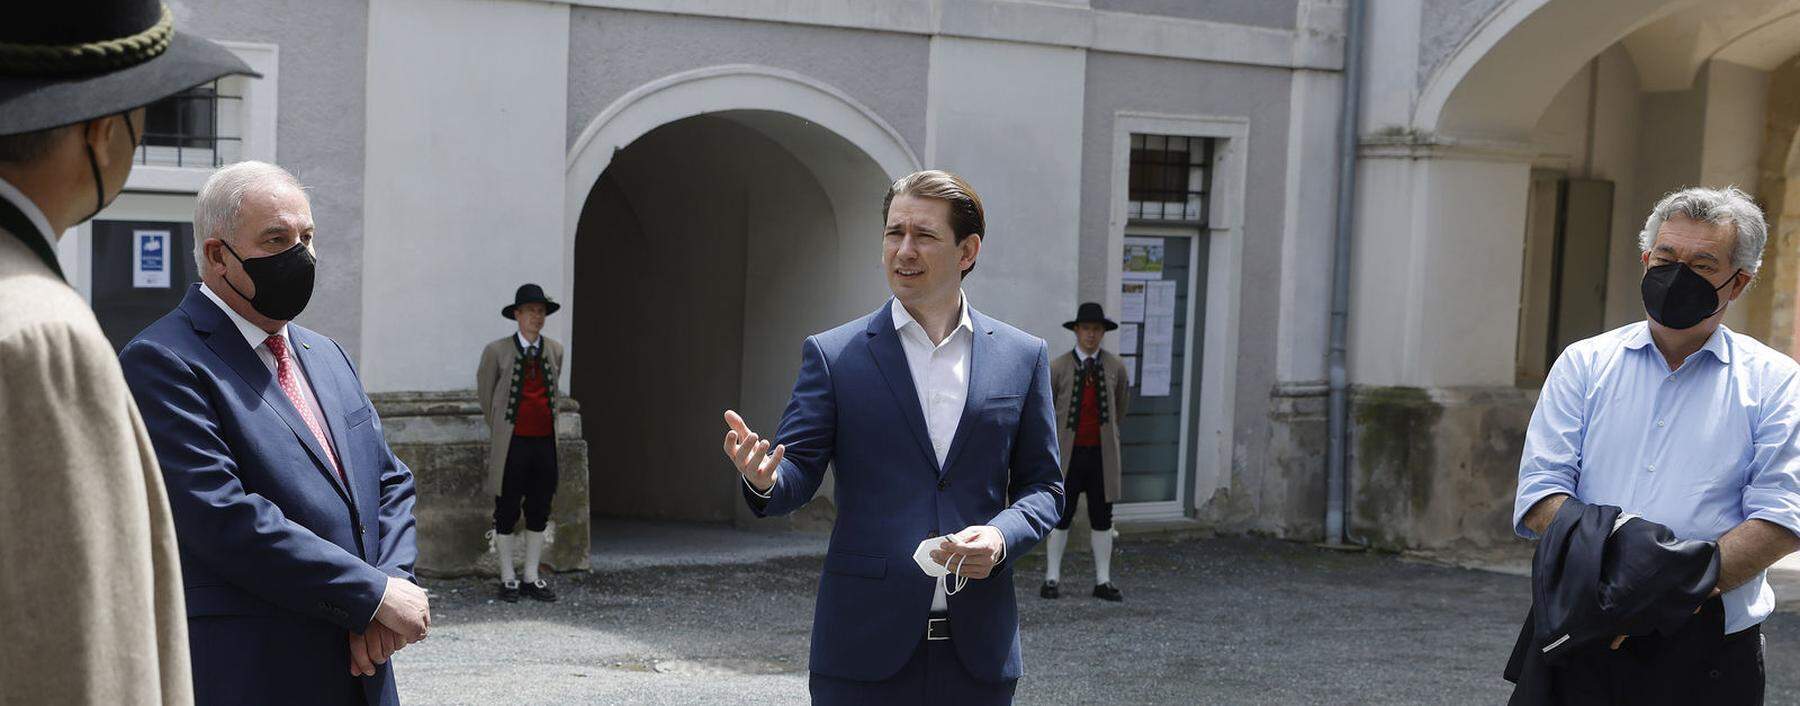 Sebastian Kurz und Werner Kogler im Mai bei einem Steiermark-Besuch. Wie andere Landeshauptleute ist mittlerweile auch Hermann Schützenhöfer (2. v. l.) auf Distanz zu Kurz gegangen.